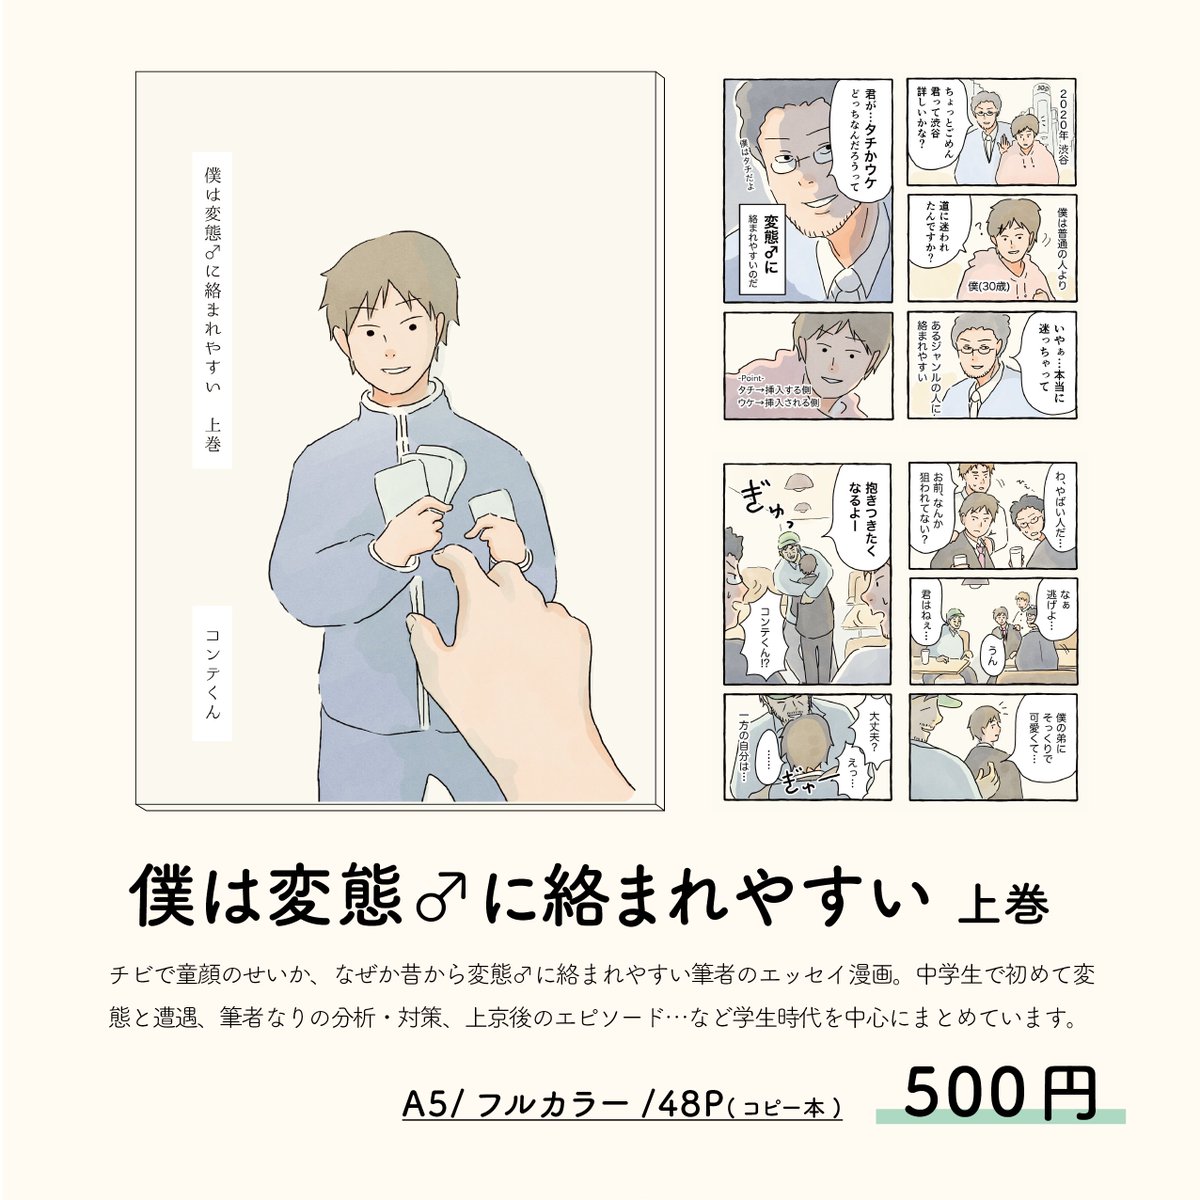 9/4(日)@東京ビックサイトで開催予定のコミティアのお品書きです。今回新刊が無いかわりに新作男子校ポストカードを無料頒布する予定なので、ぜひぜひスペース(と22a)に遊びにきてください〜!
#COMITIA141 #コミティア141 